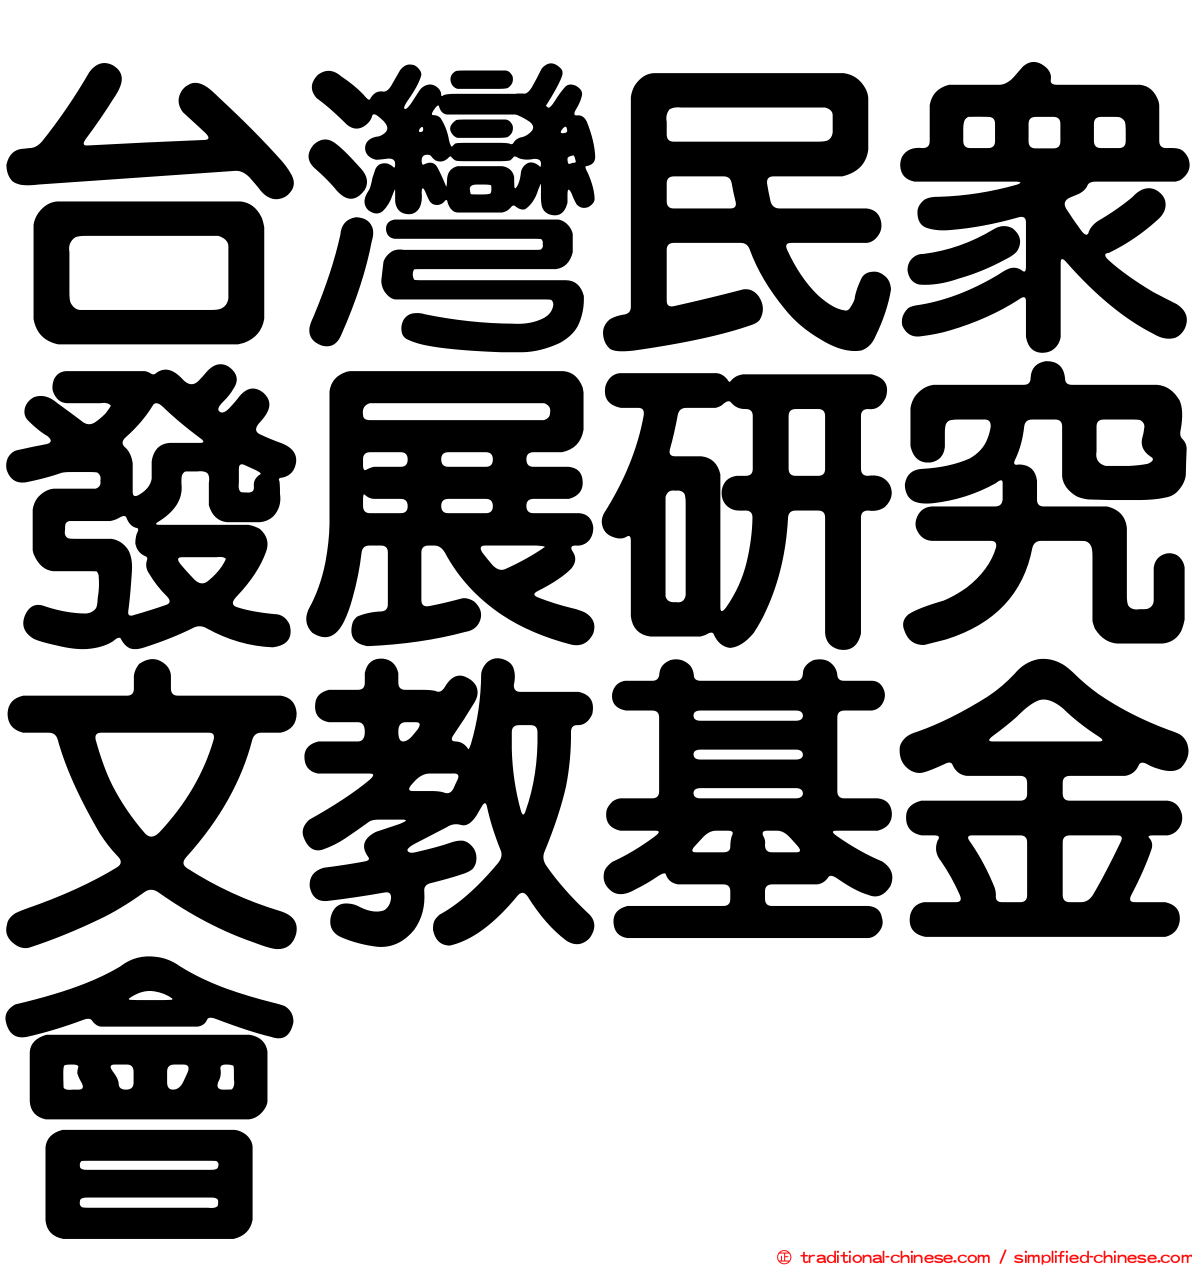 台灣民眾發展研究文教基金會